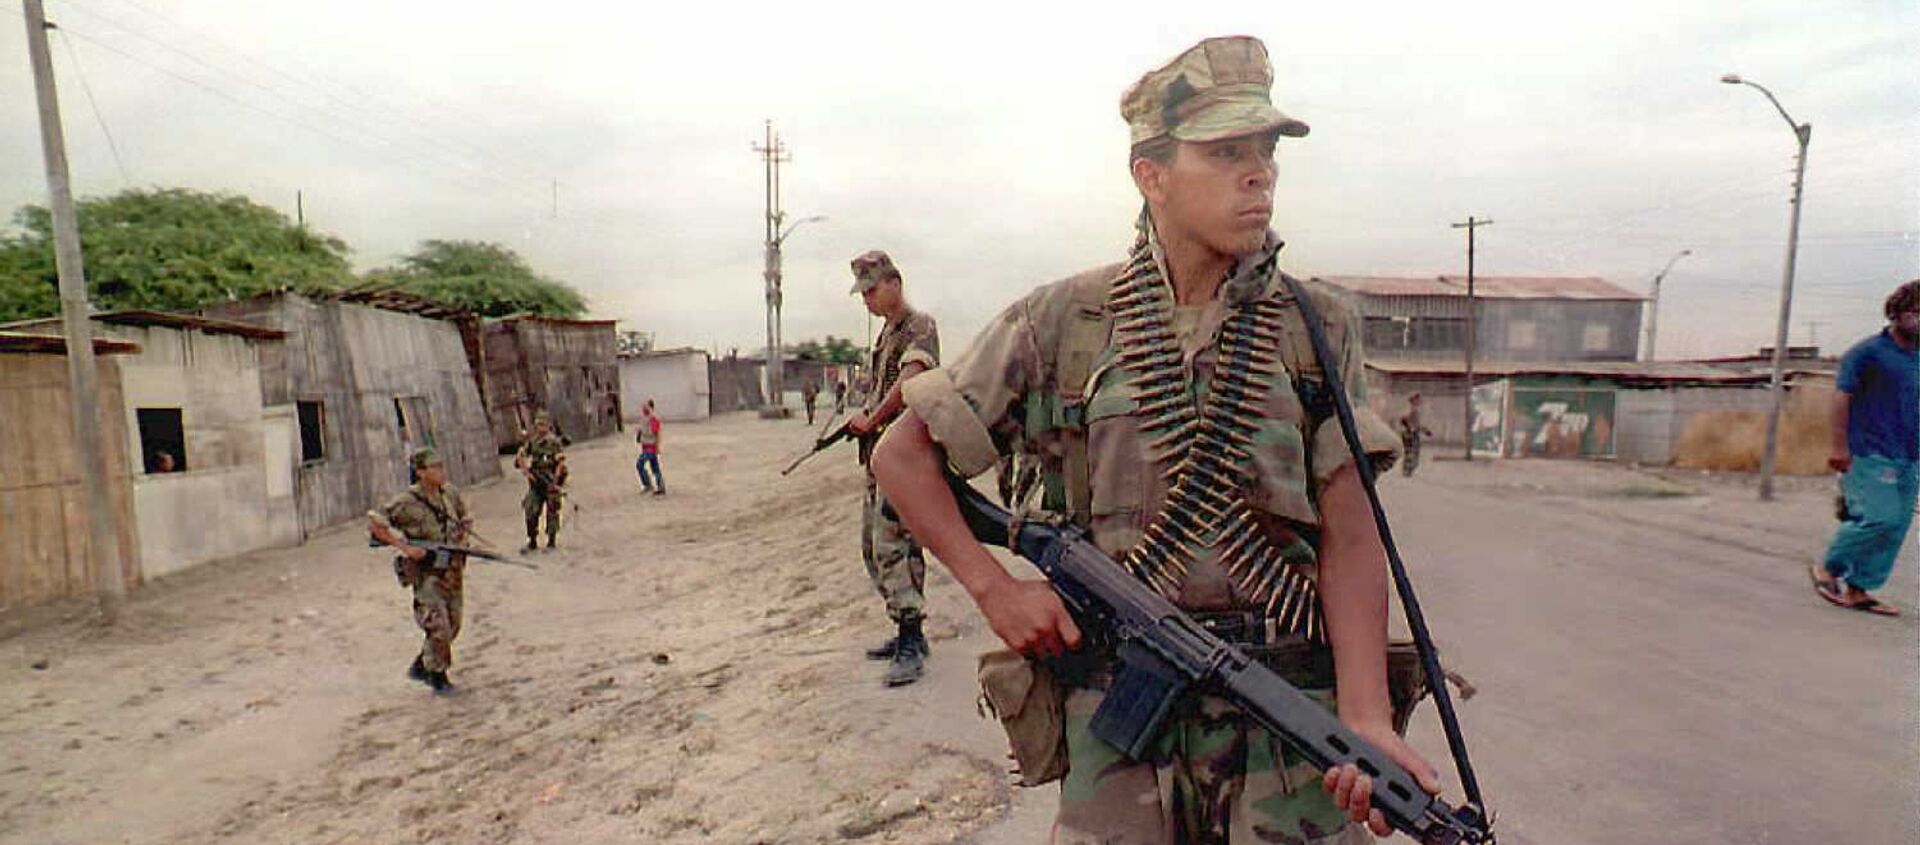 Soldados peruanos patrullan una ciudad cerca de la frontera con Ecuador, 1995 (imagen referencial) - Sputnik Mundo, 1920, 28.02.2020